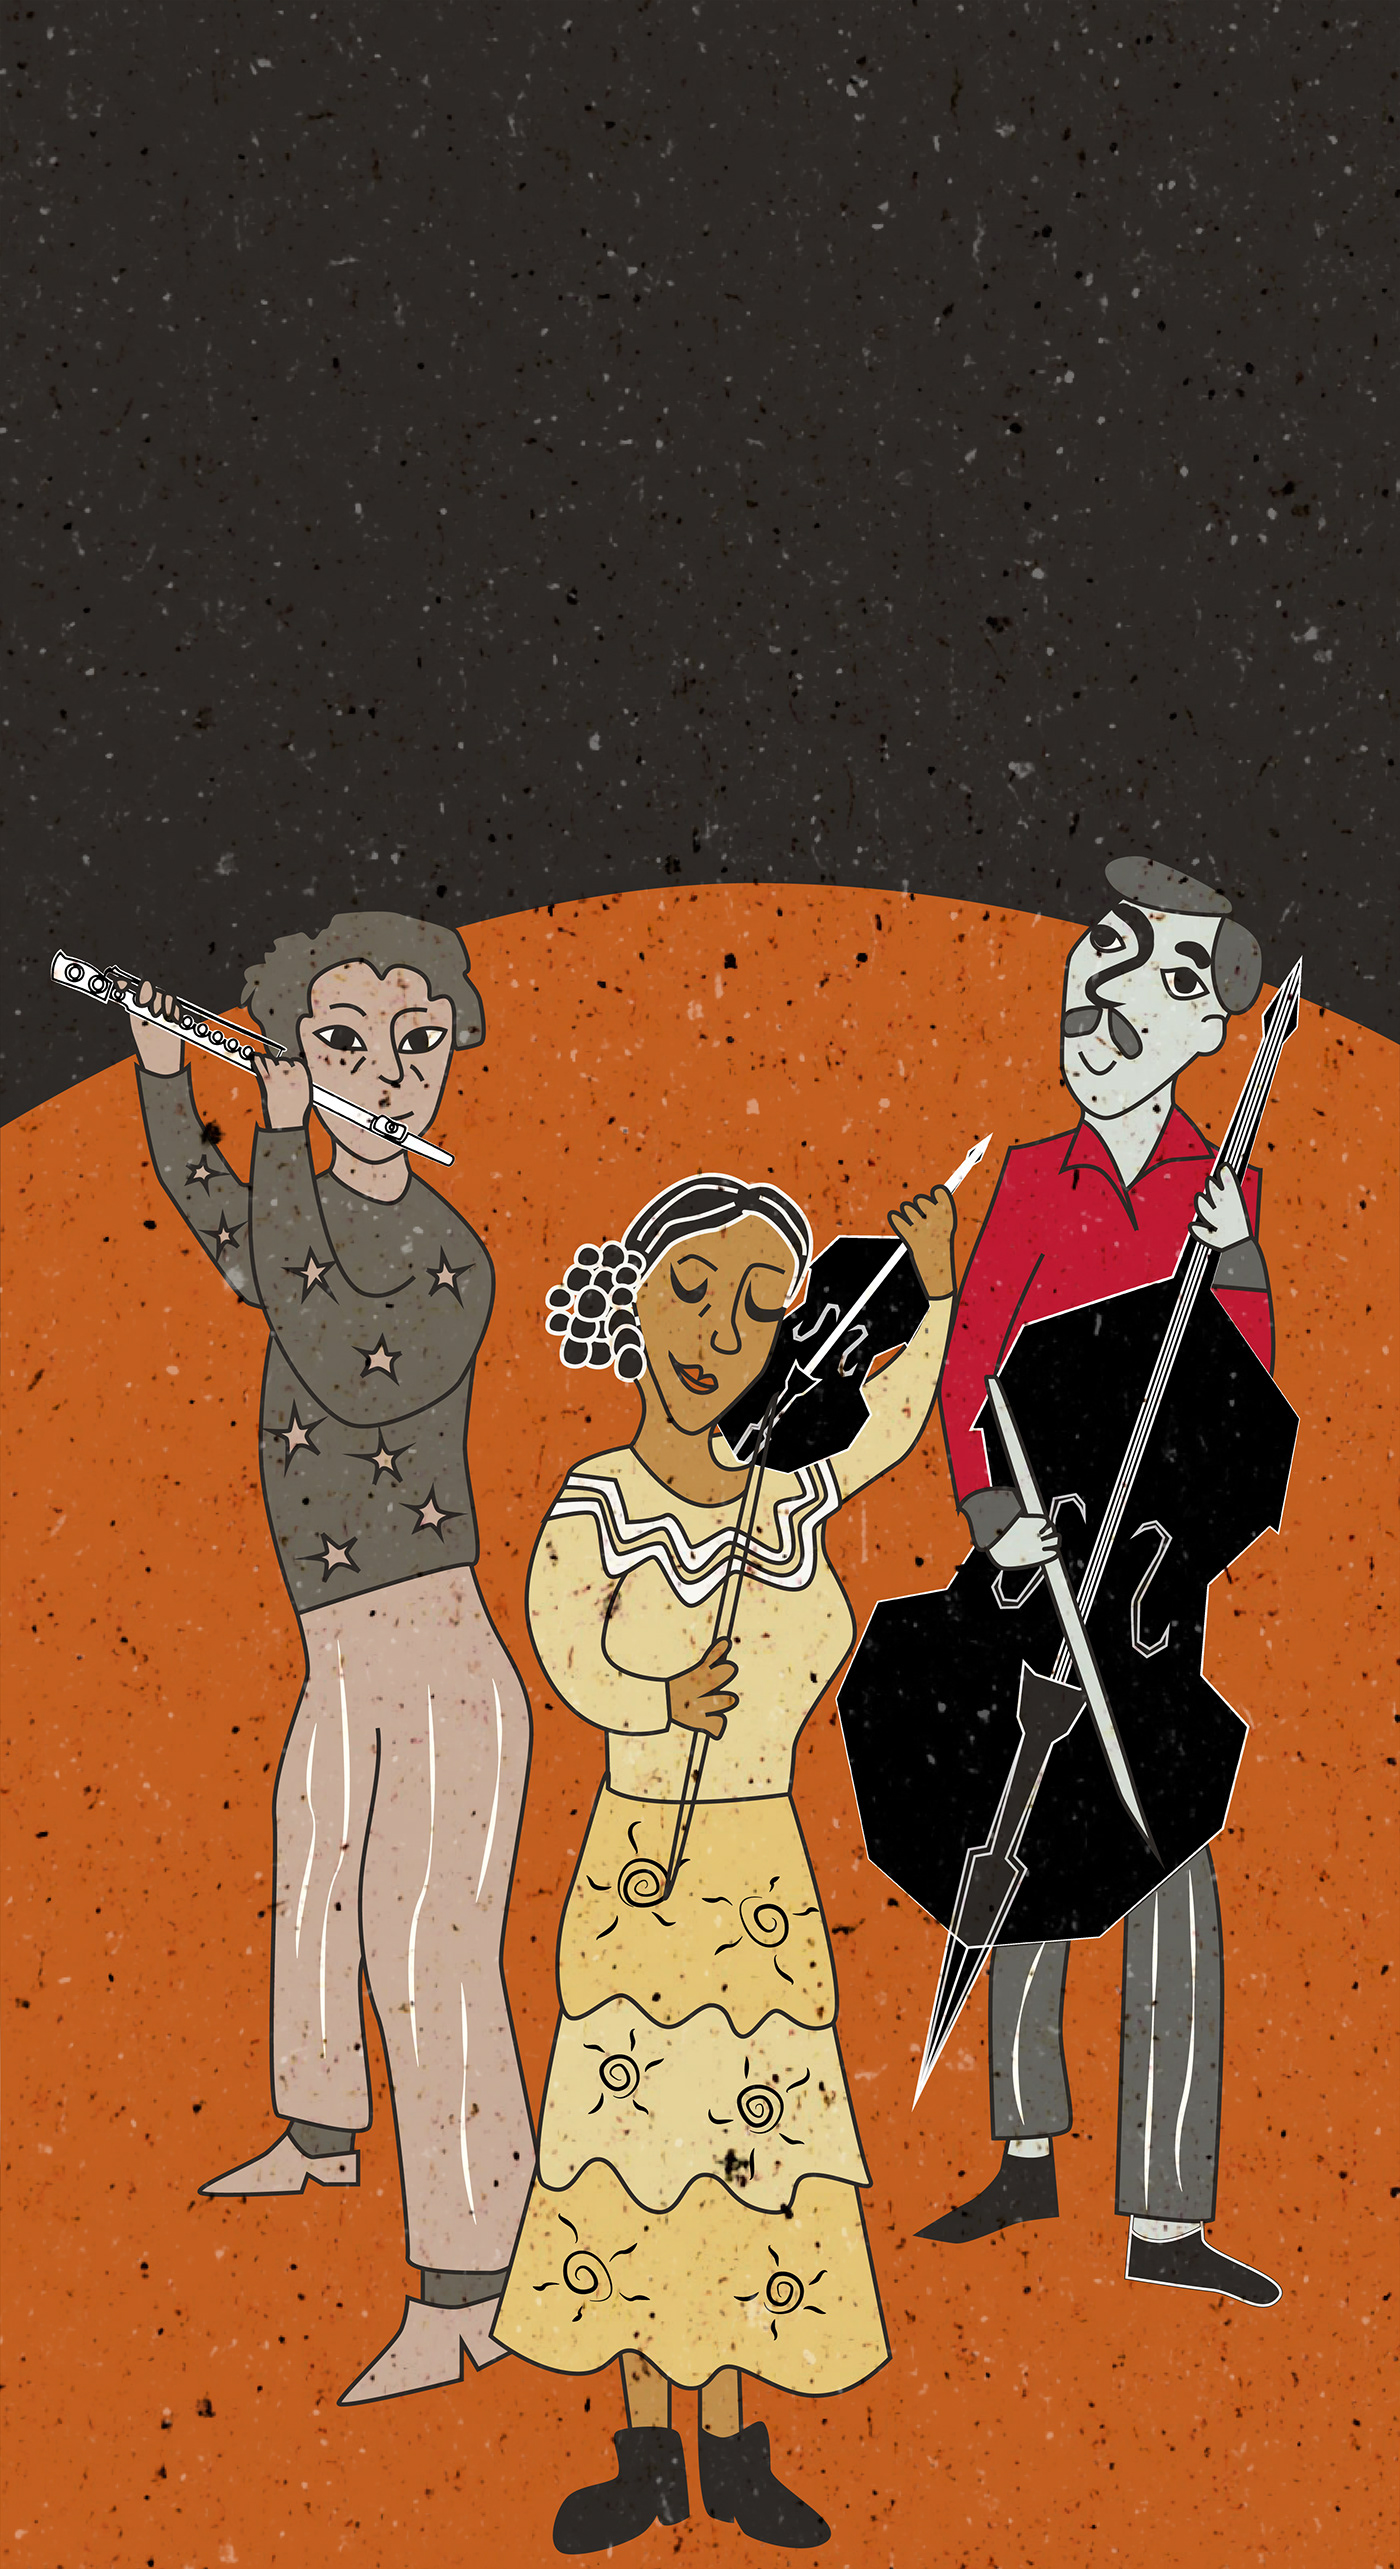 Ilustração que remete a xilogravura de três músicos tocando flauta, violino e contrabaixo.